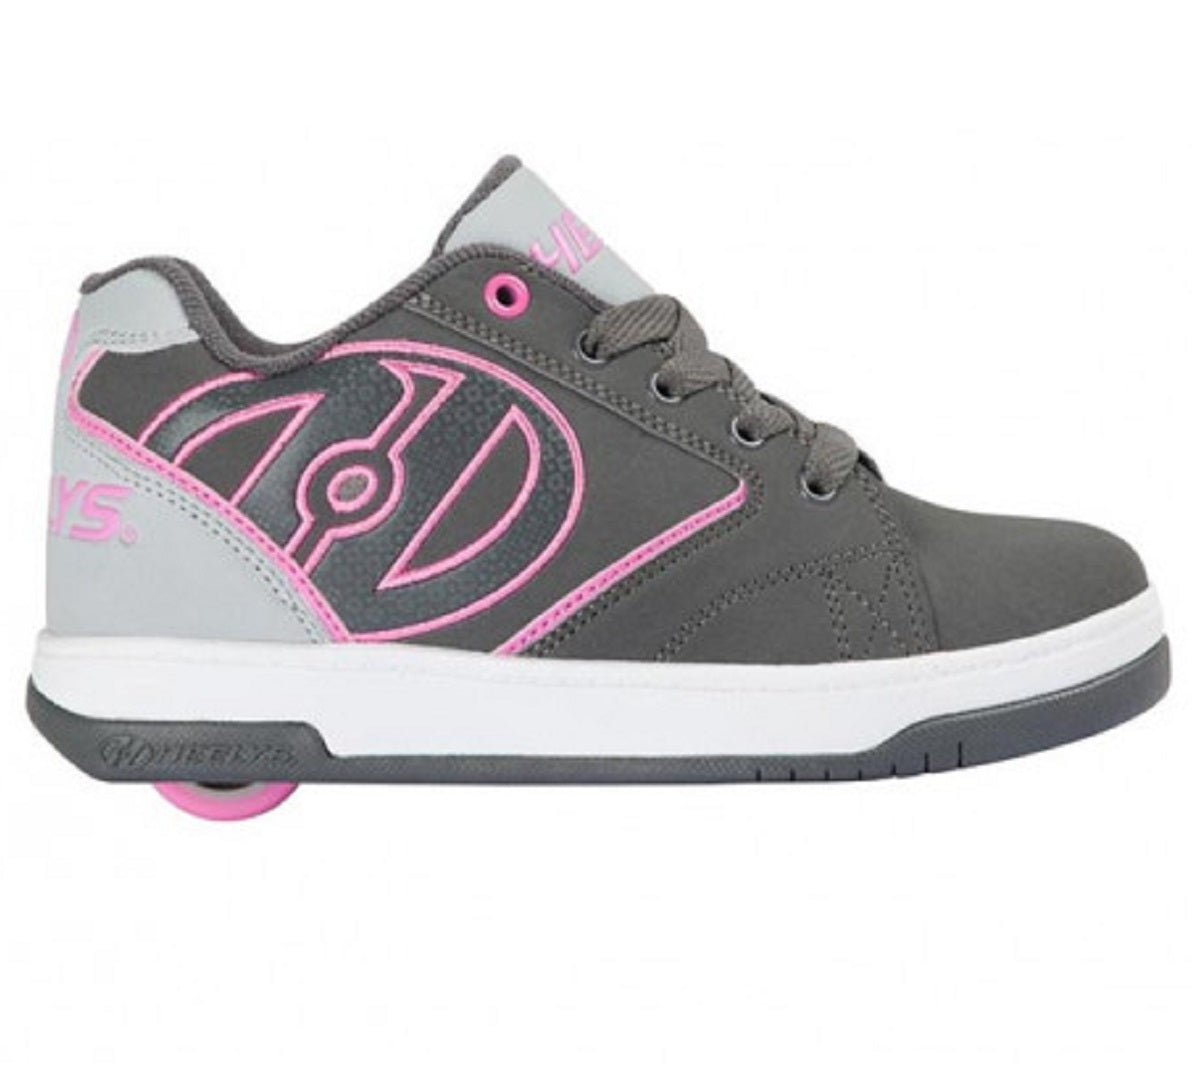 heelys-roller-shoe-propel-2-0-he100041-charcoal-gray-pink-2-519-21893.jpg.jpg